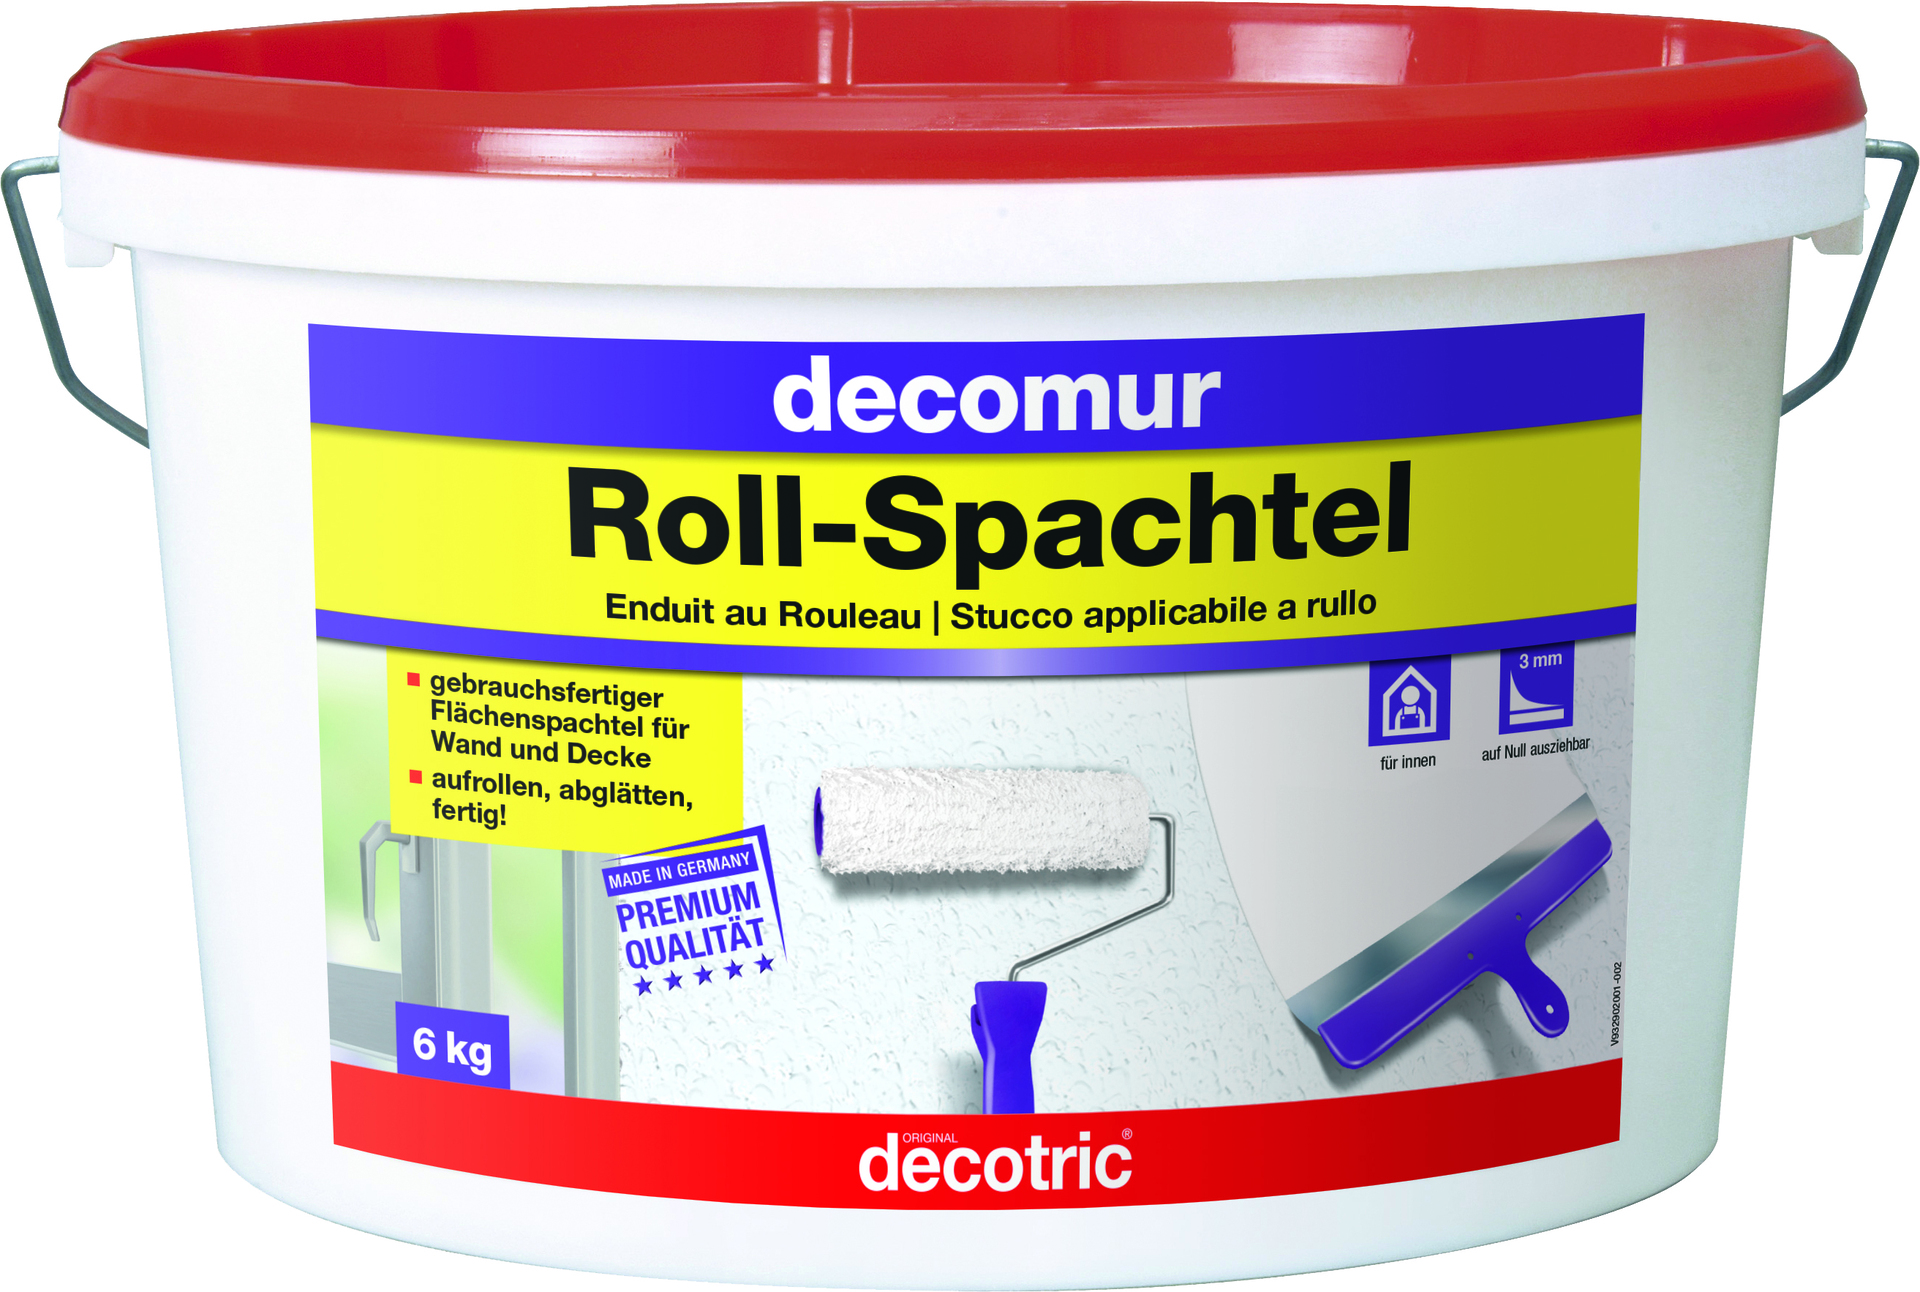 decomur Roll-Spachtel